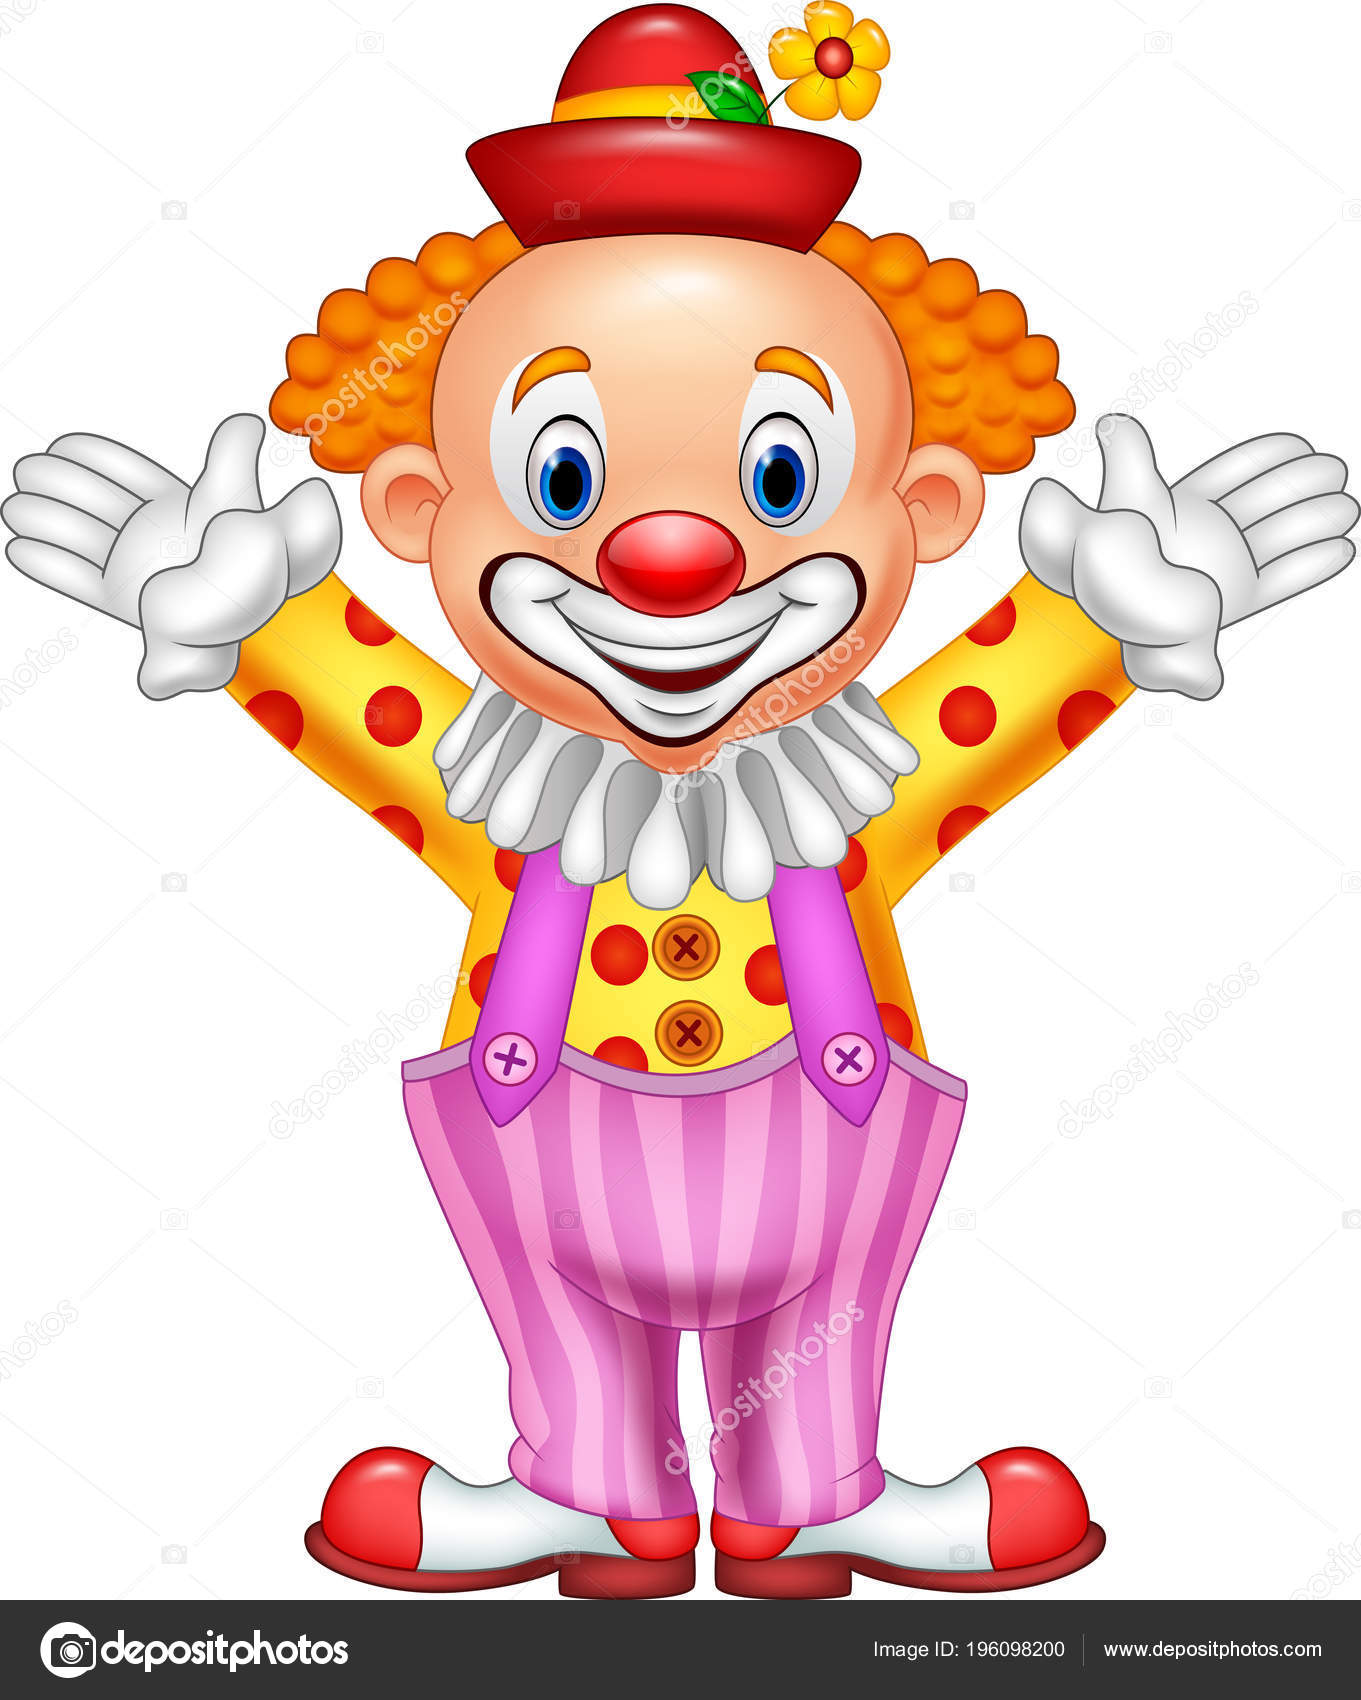 Smiling Clown Clown Mit Krawatte Und Hupe Auf Weißem Hintergrund Lizenzfrei  nutzbare SVG, Vektorgrafiken, Clip Arts, Illustrationen. Image 50576713.